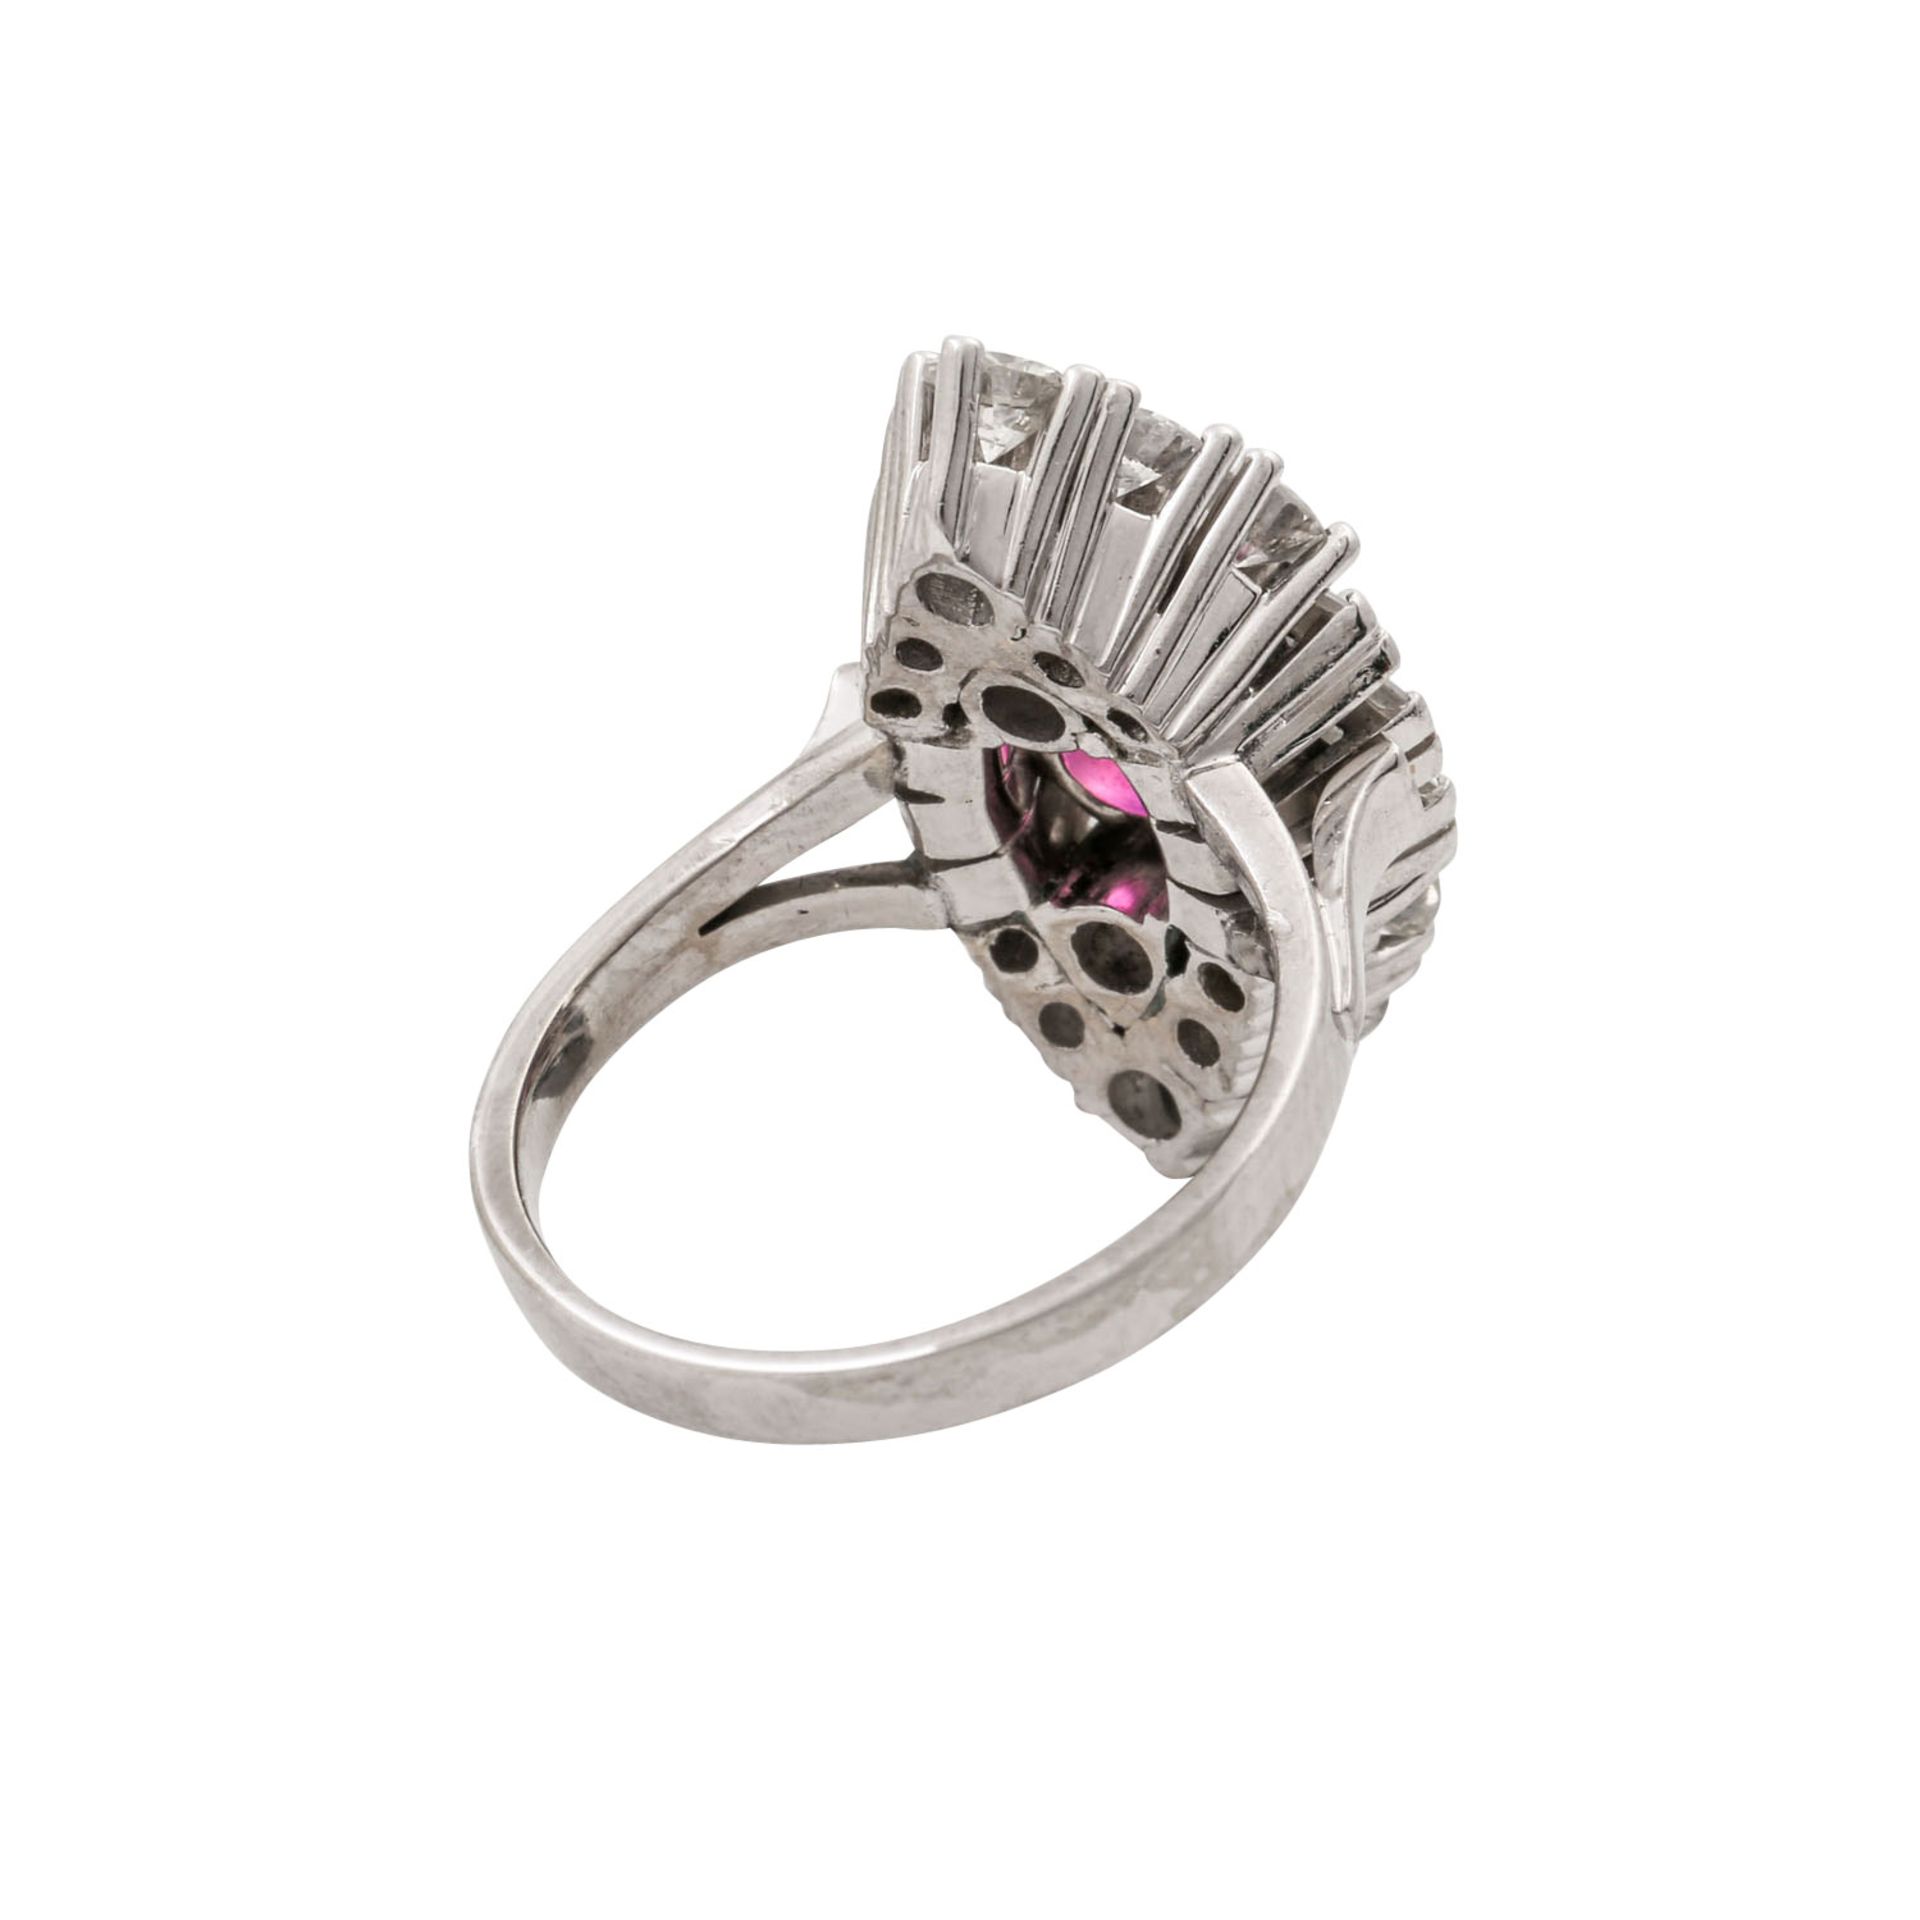 Ring mit pinkfarbenem Saphir ca. 2,5 ct, Brillanten zus. ca. 1,5 ct und Diamantbaguett - Bild 3 aus 5